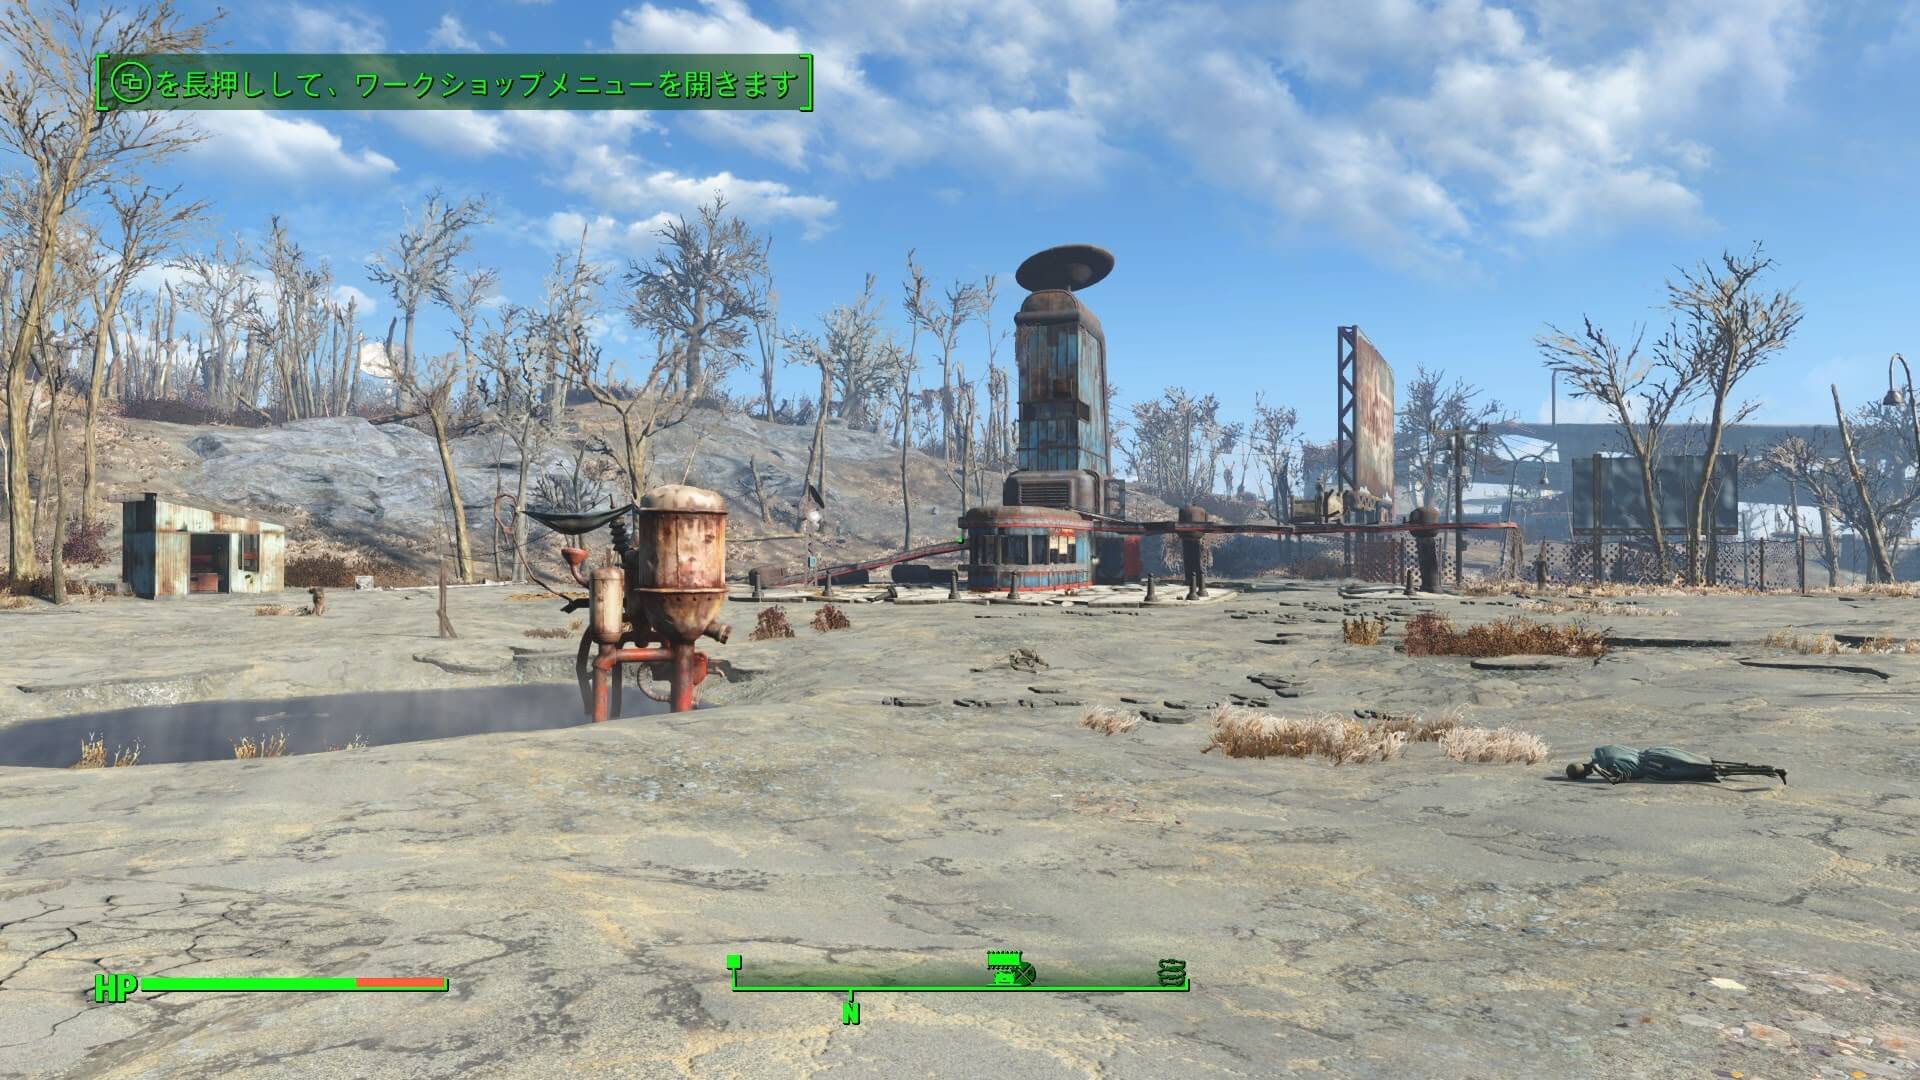 Fallout 4 真っ先に探すべき場所と 必ず発見できる裏ワザを紹介 行方不明になったドッグミートを発見するためのハウツー